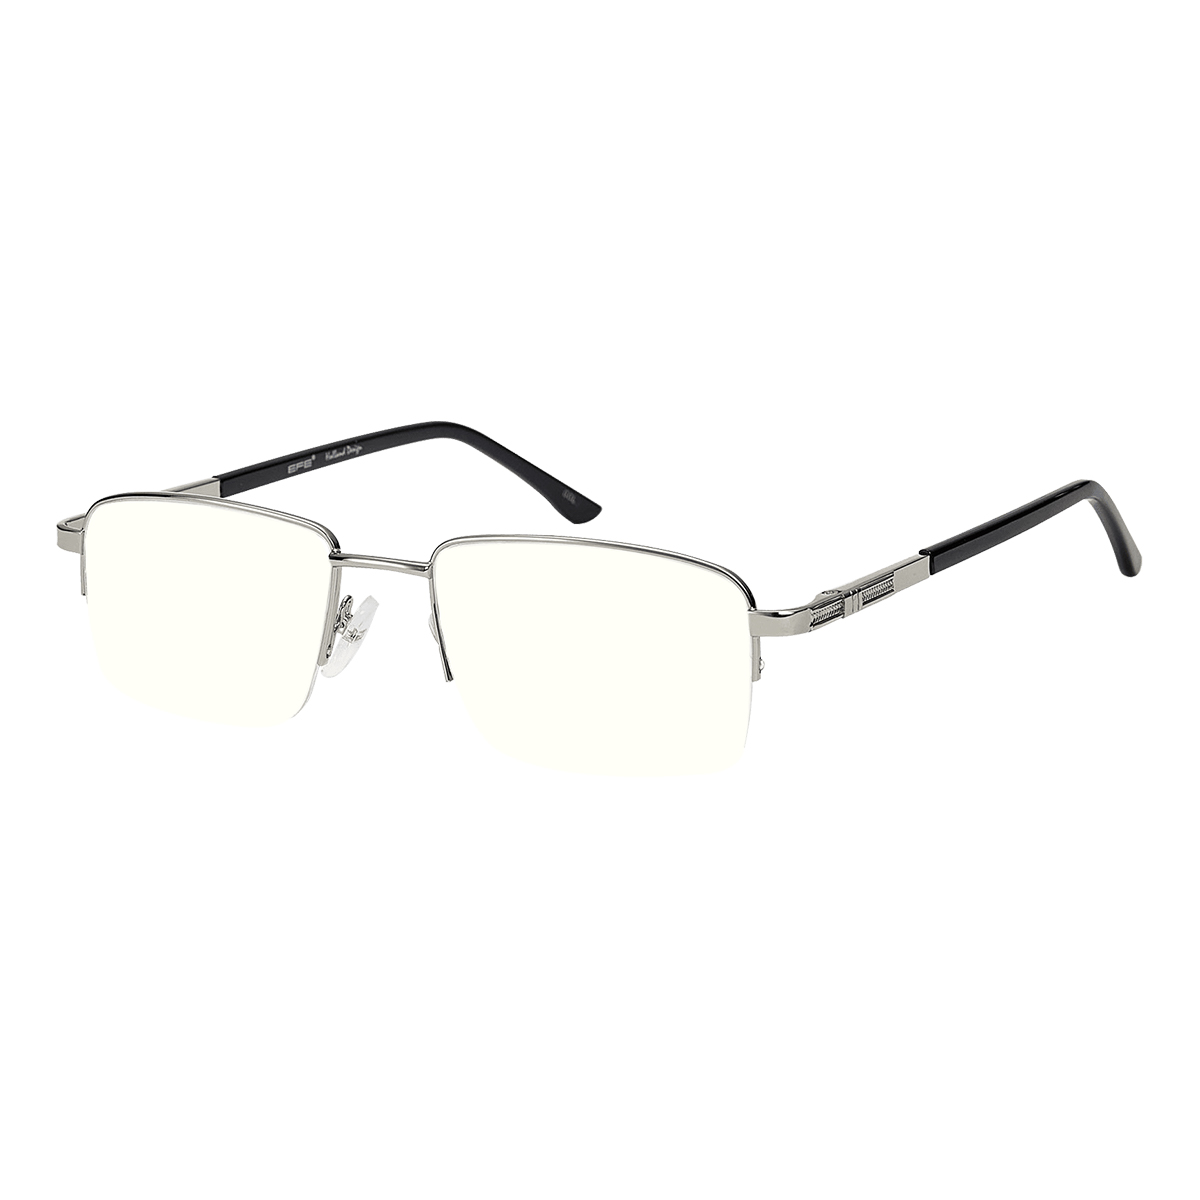 Siuph - Rectangle Silver Reading Glasses for Men